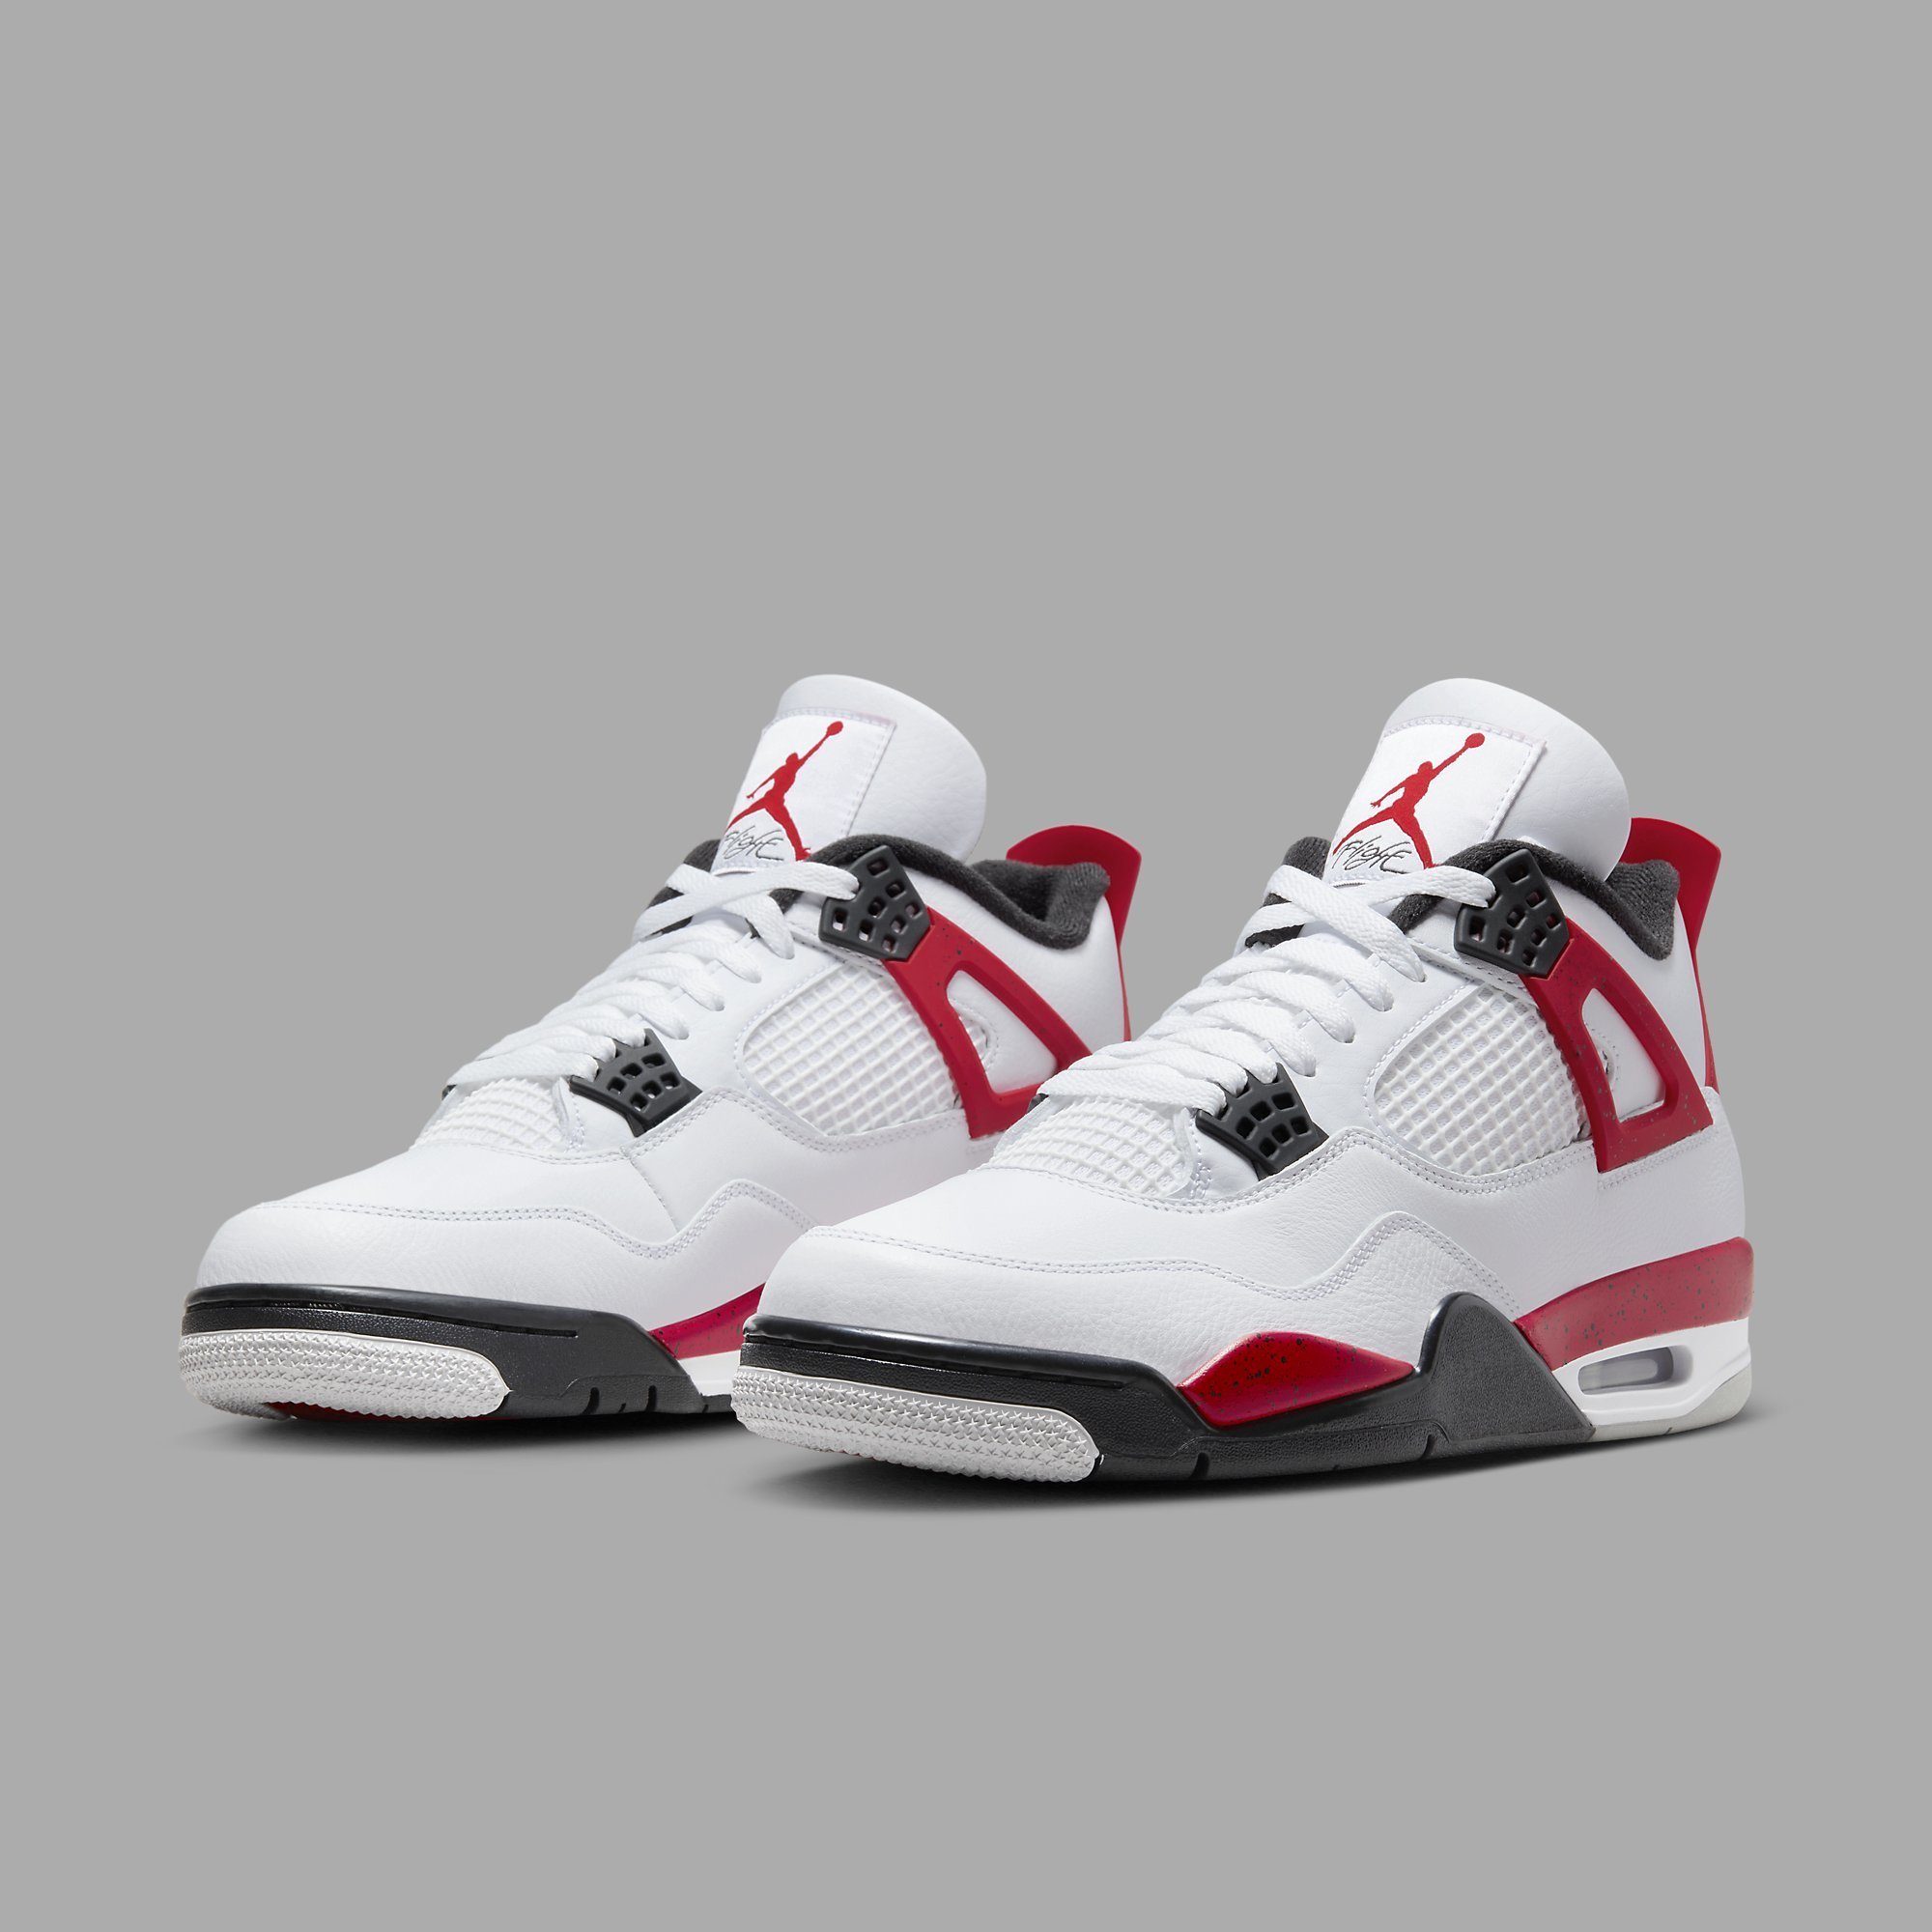 Air Jordan New Releases